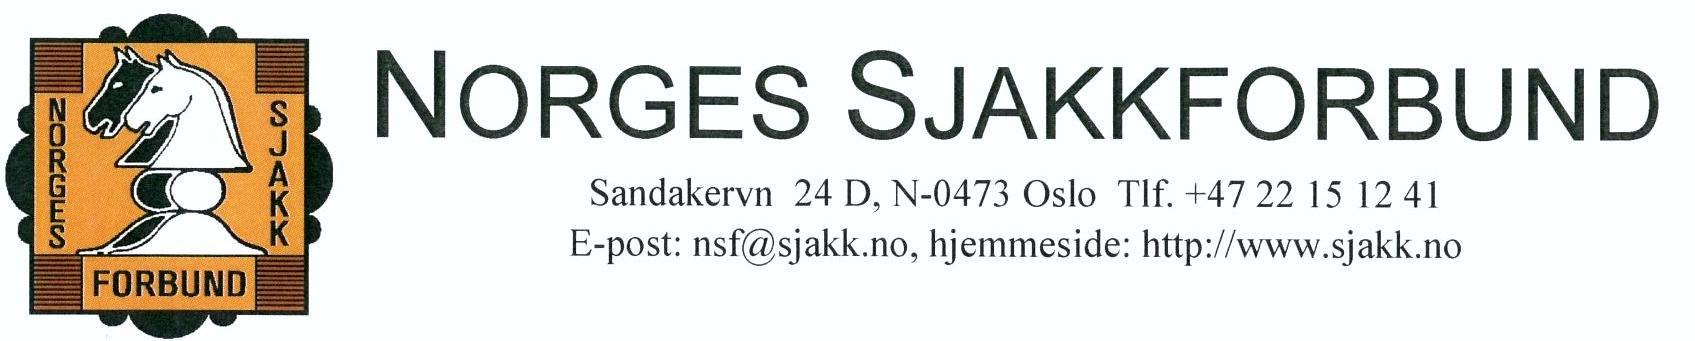 kalling INNKALLING TIL NORGES SJAKKFORBUNDS 93. KONGRESS som avholdes i Trondheim søndag 13. juli 2014 kl. 18.00.